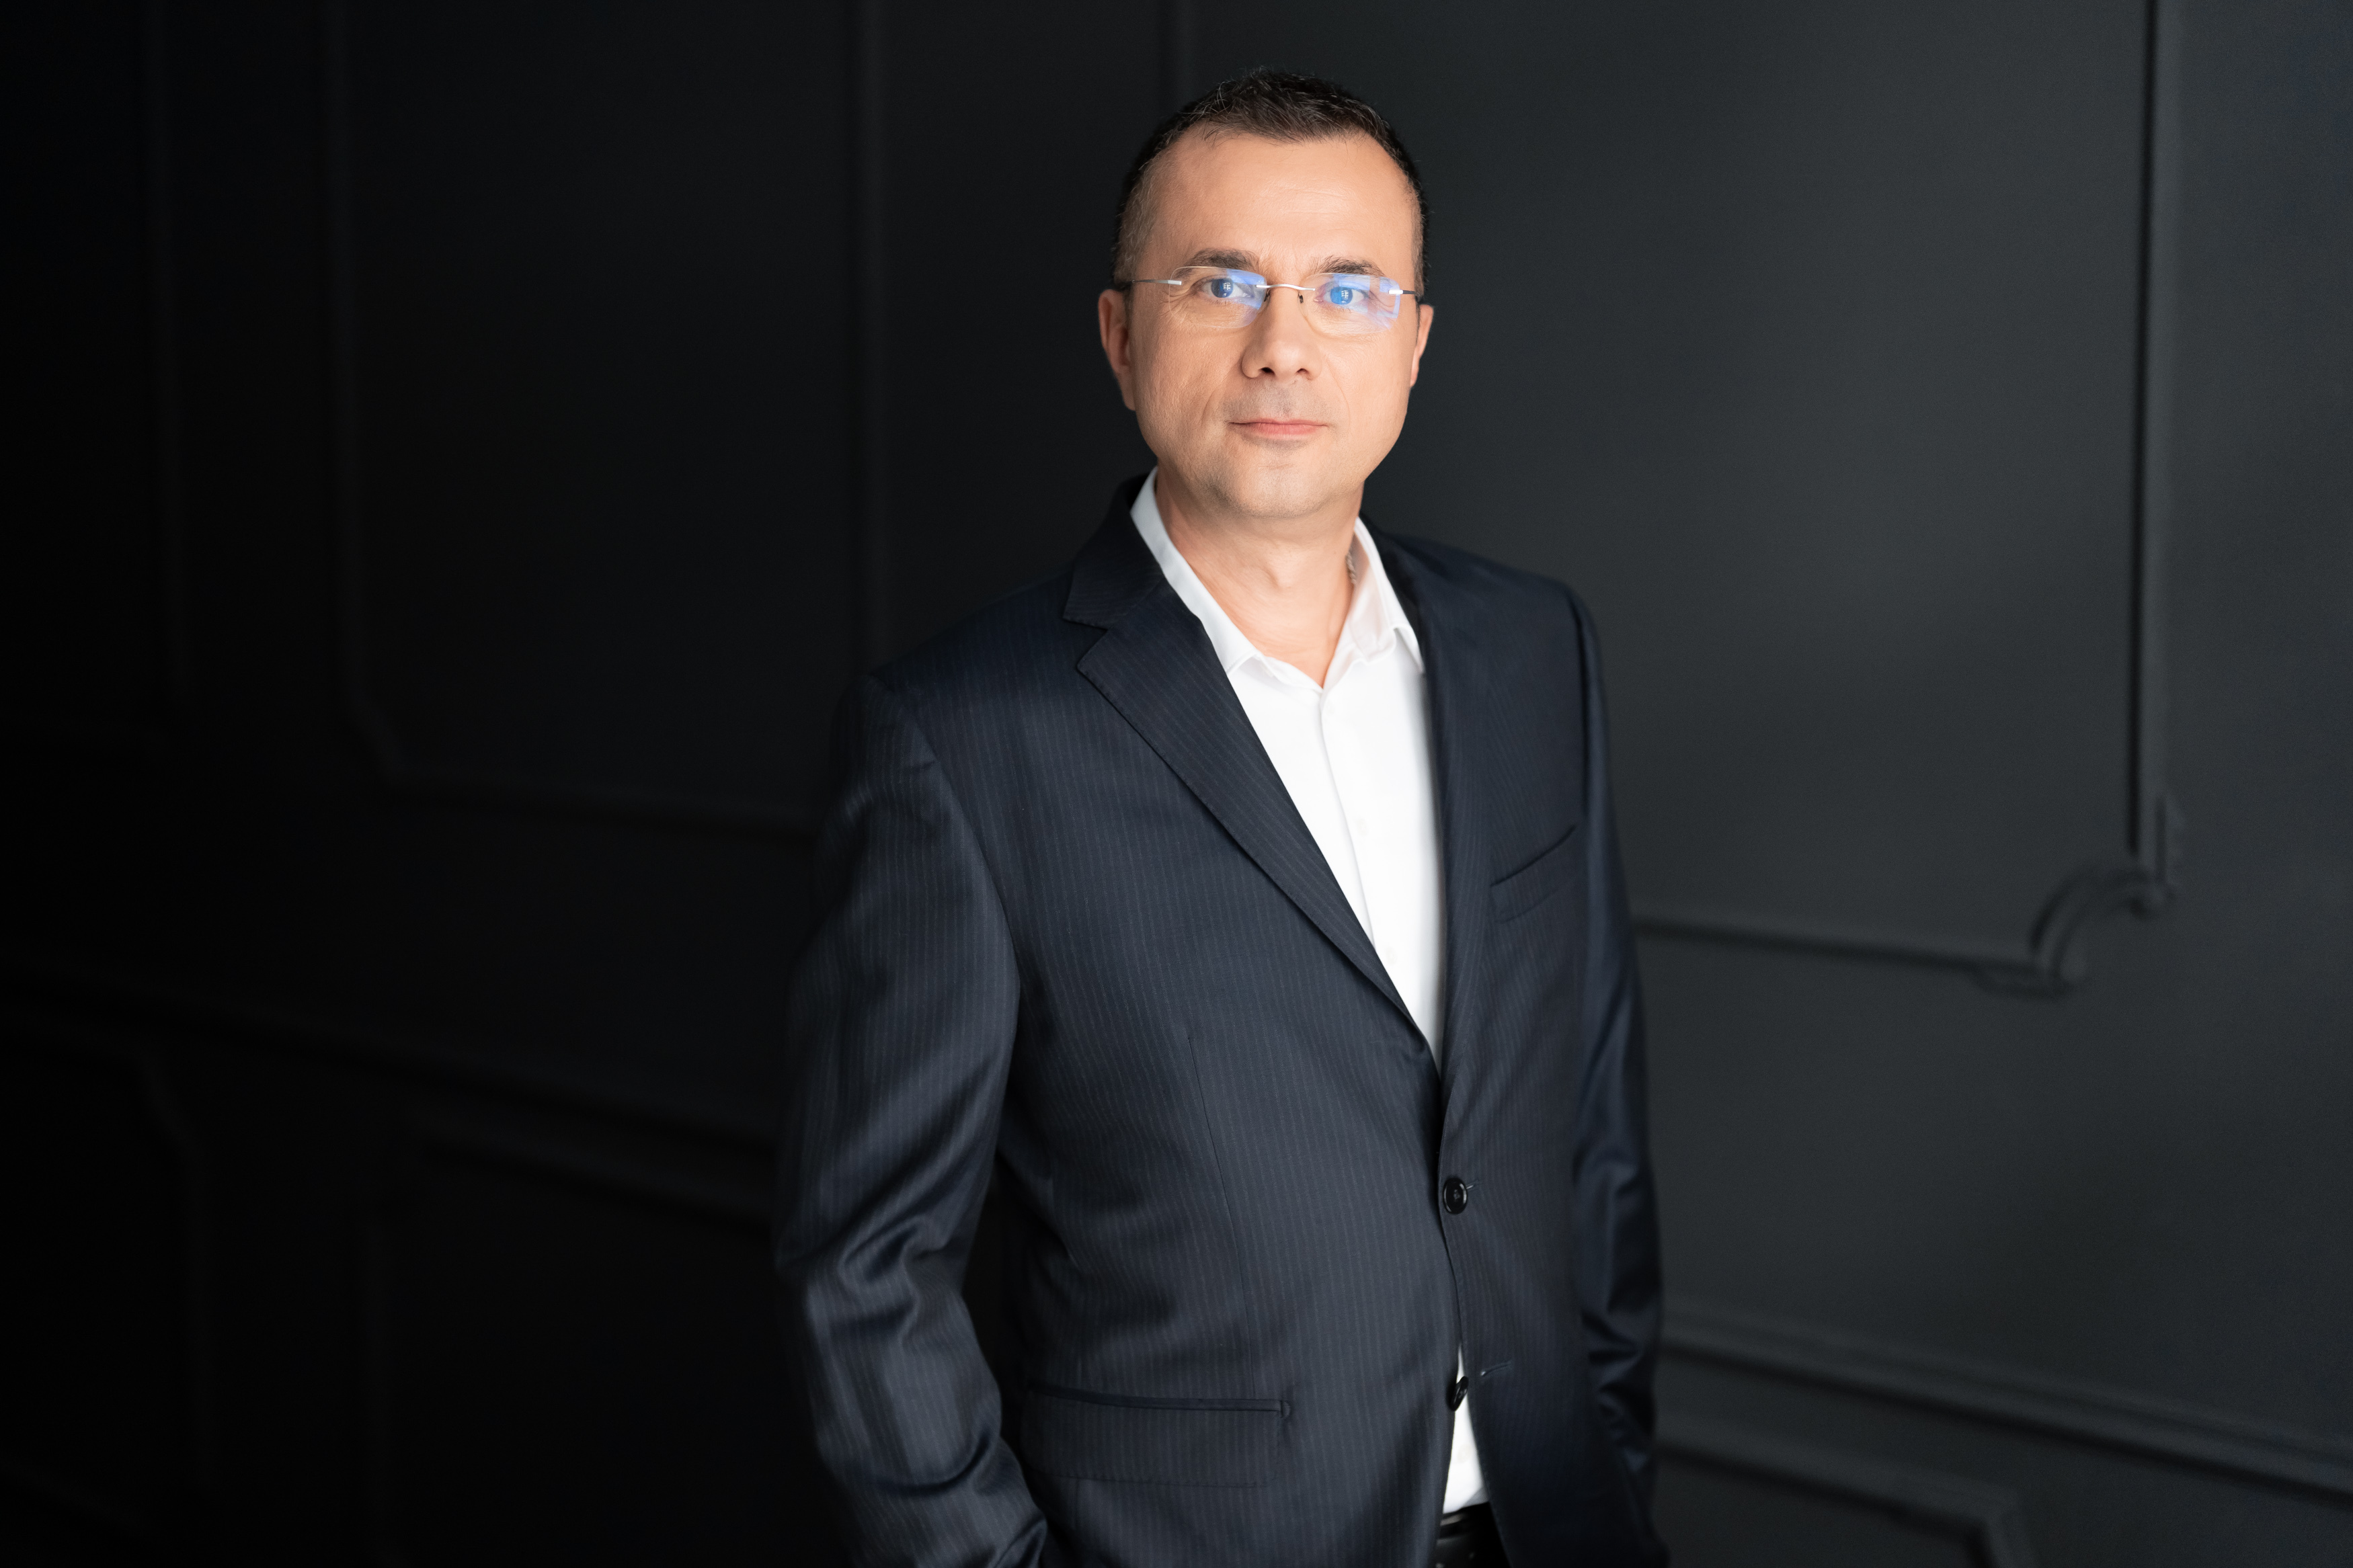 Numire strategică în Carrefour România: Narcis Horhoianu, director de Marketing, preia conducerea departamentului e-commerce. “Ne concentrăm pe inovaţie şi digitalizare şi continuăm să investim în zona de data”